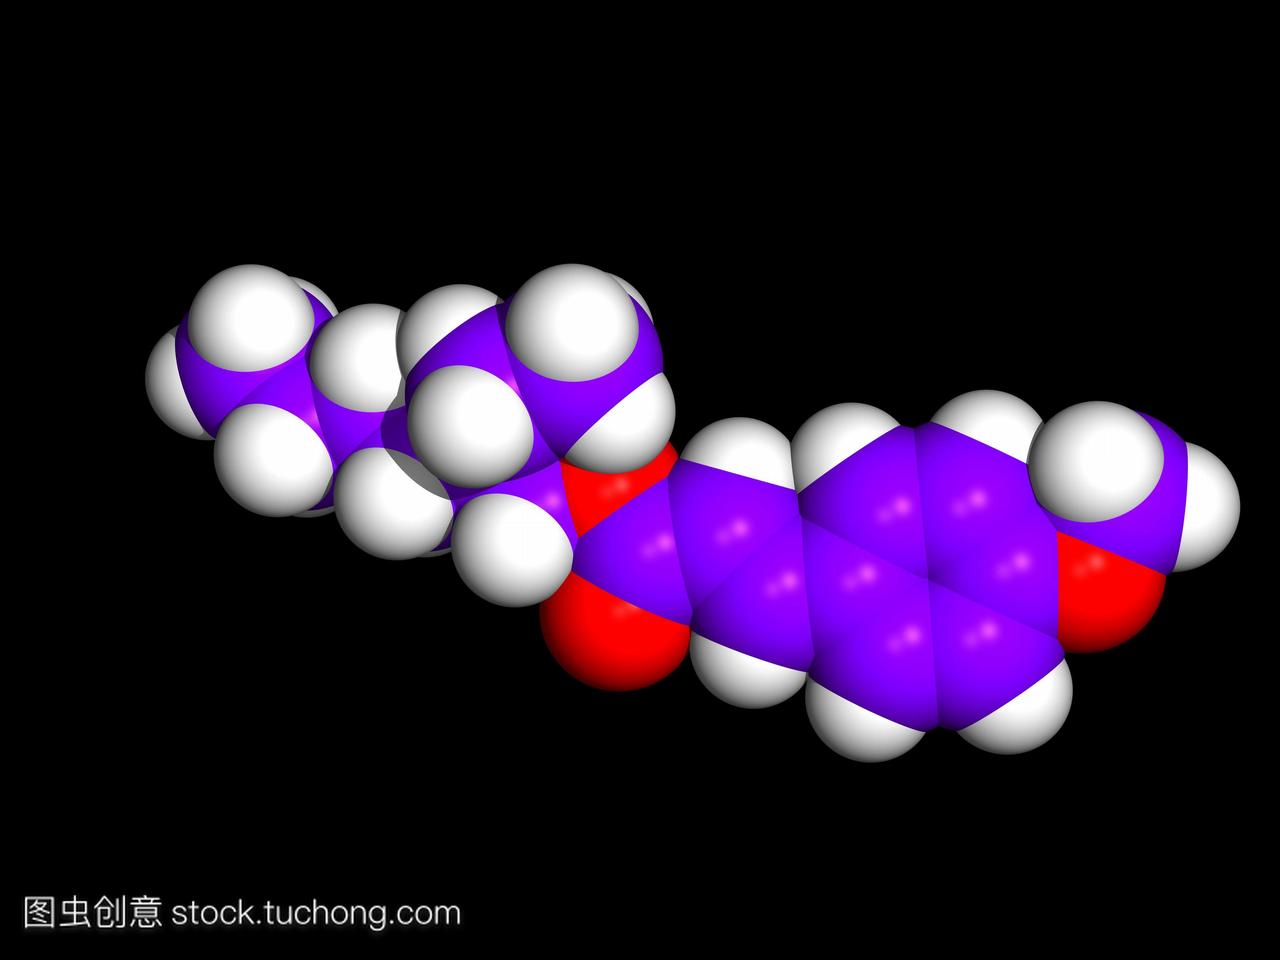 防晒霜化学。一种防晒霜分子的计算机图形--2